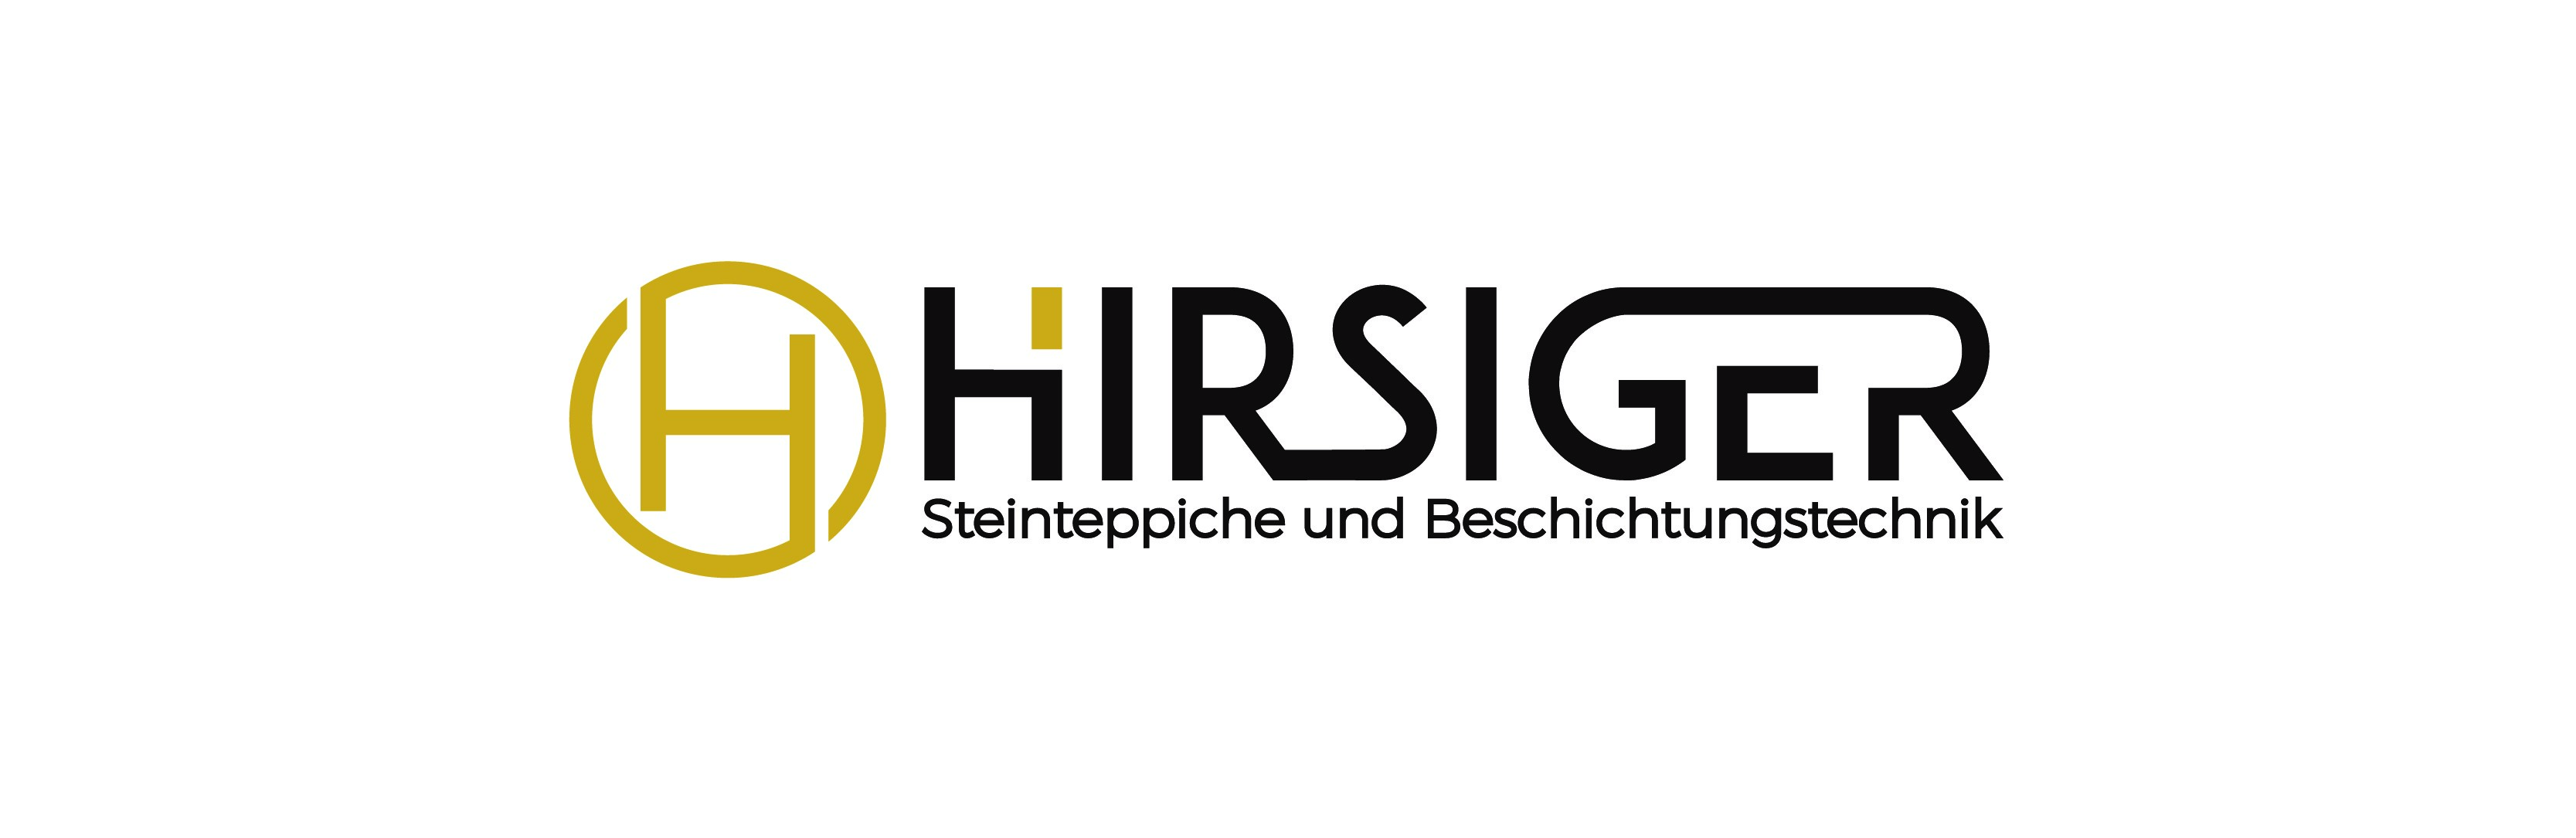 Hirsiger Steinteppiche und Beschichtungstechnik - Steinteppich Fachbetrieb für die Schweiz